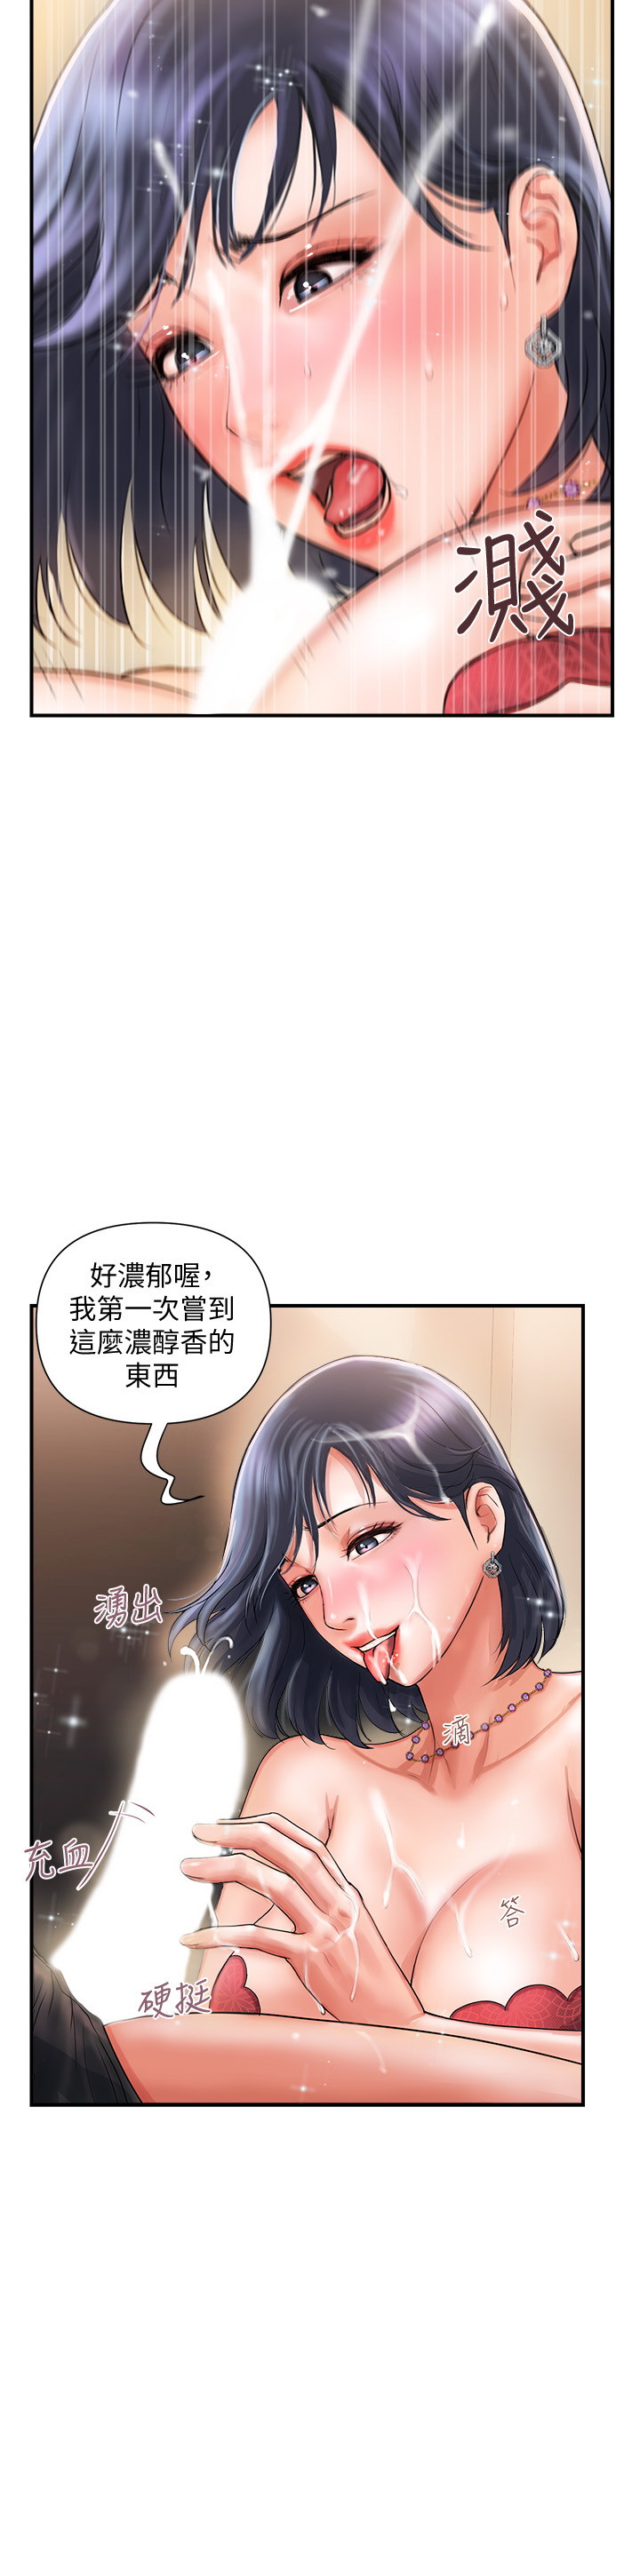 韩国污漫画 行走費洛蒙 第2话 30